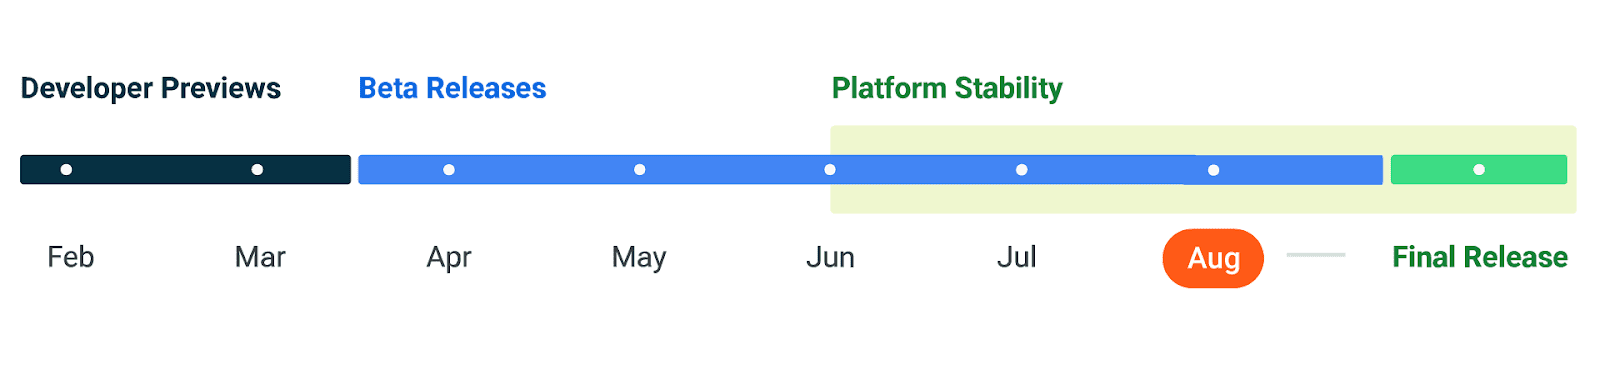 Imagen de la línea de tiempo que muestra que el lanzamiento de Android 14 está programado con las pruebas de estabilidad de la plataforma en marcha en agosto